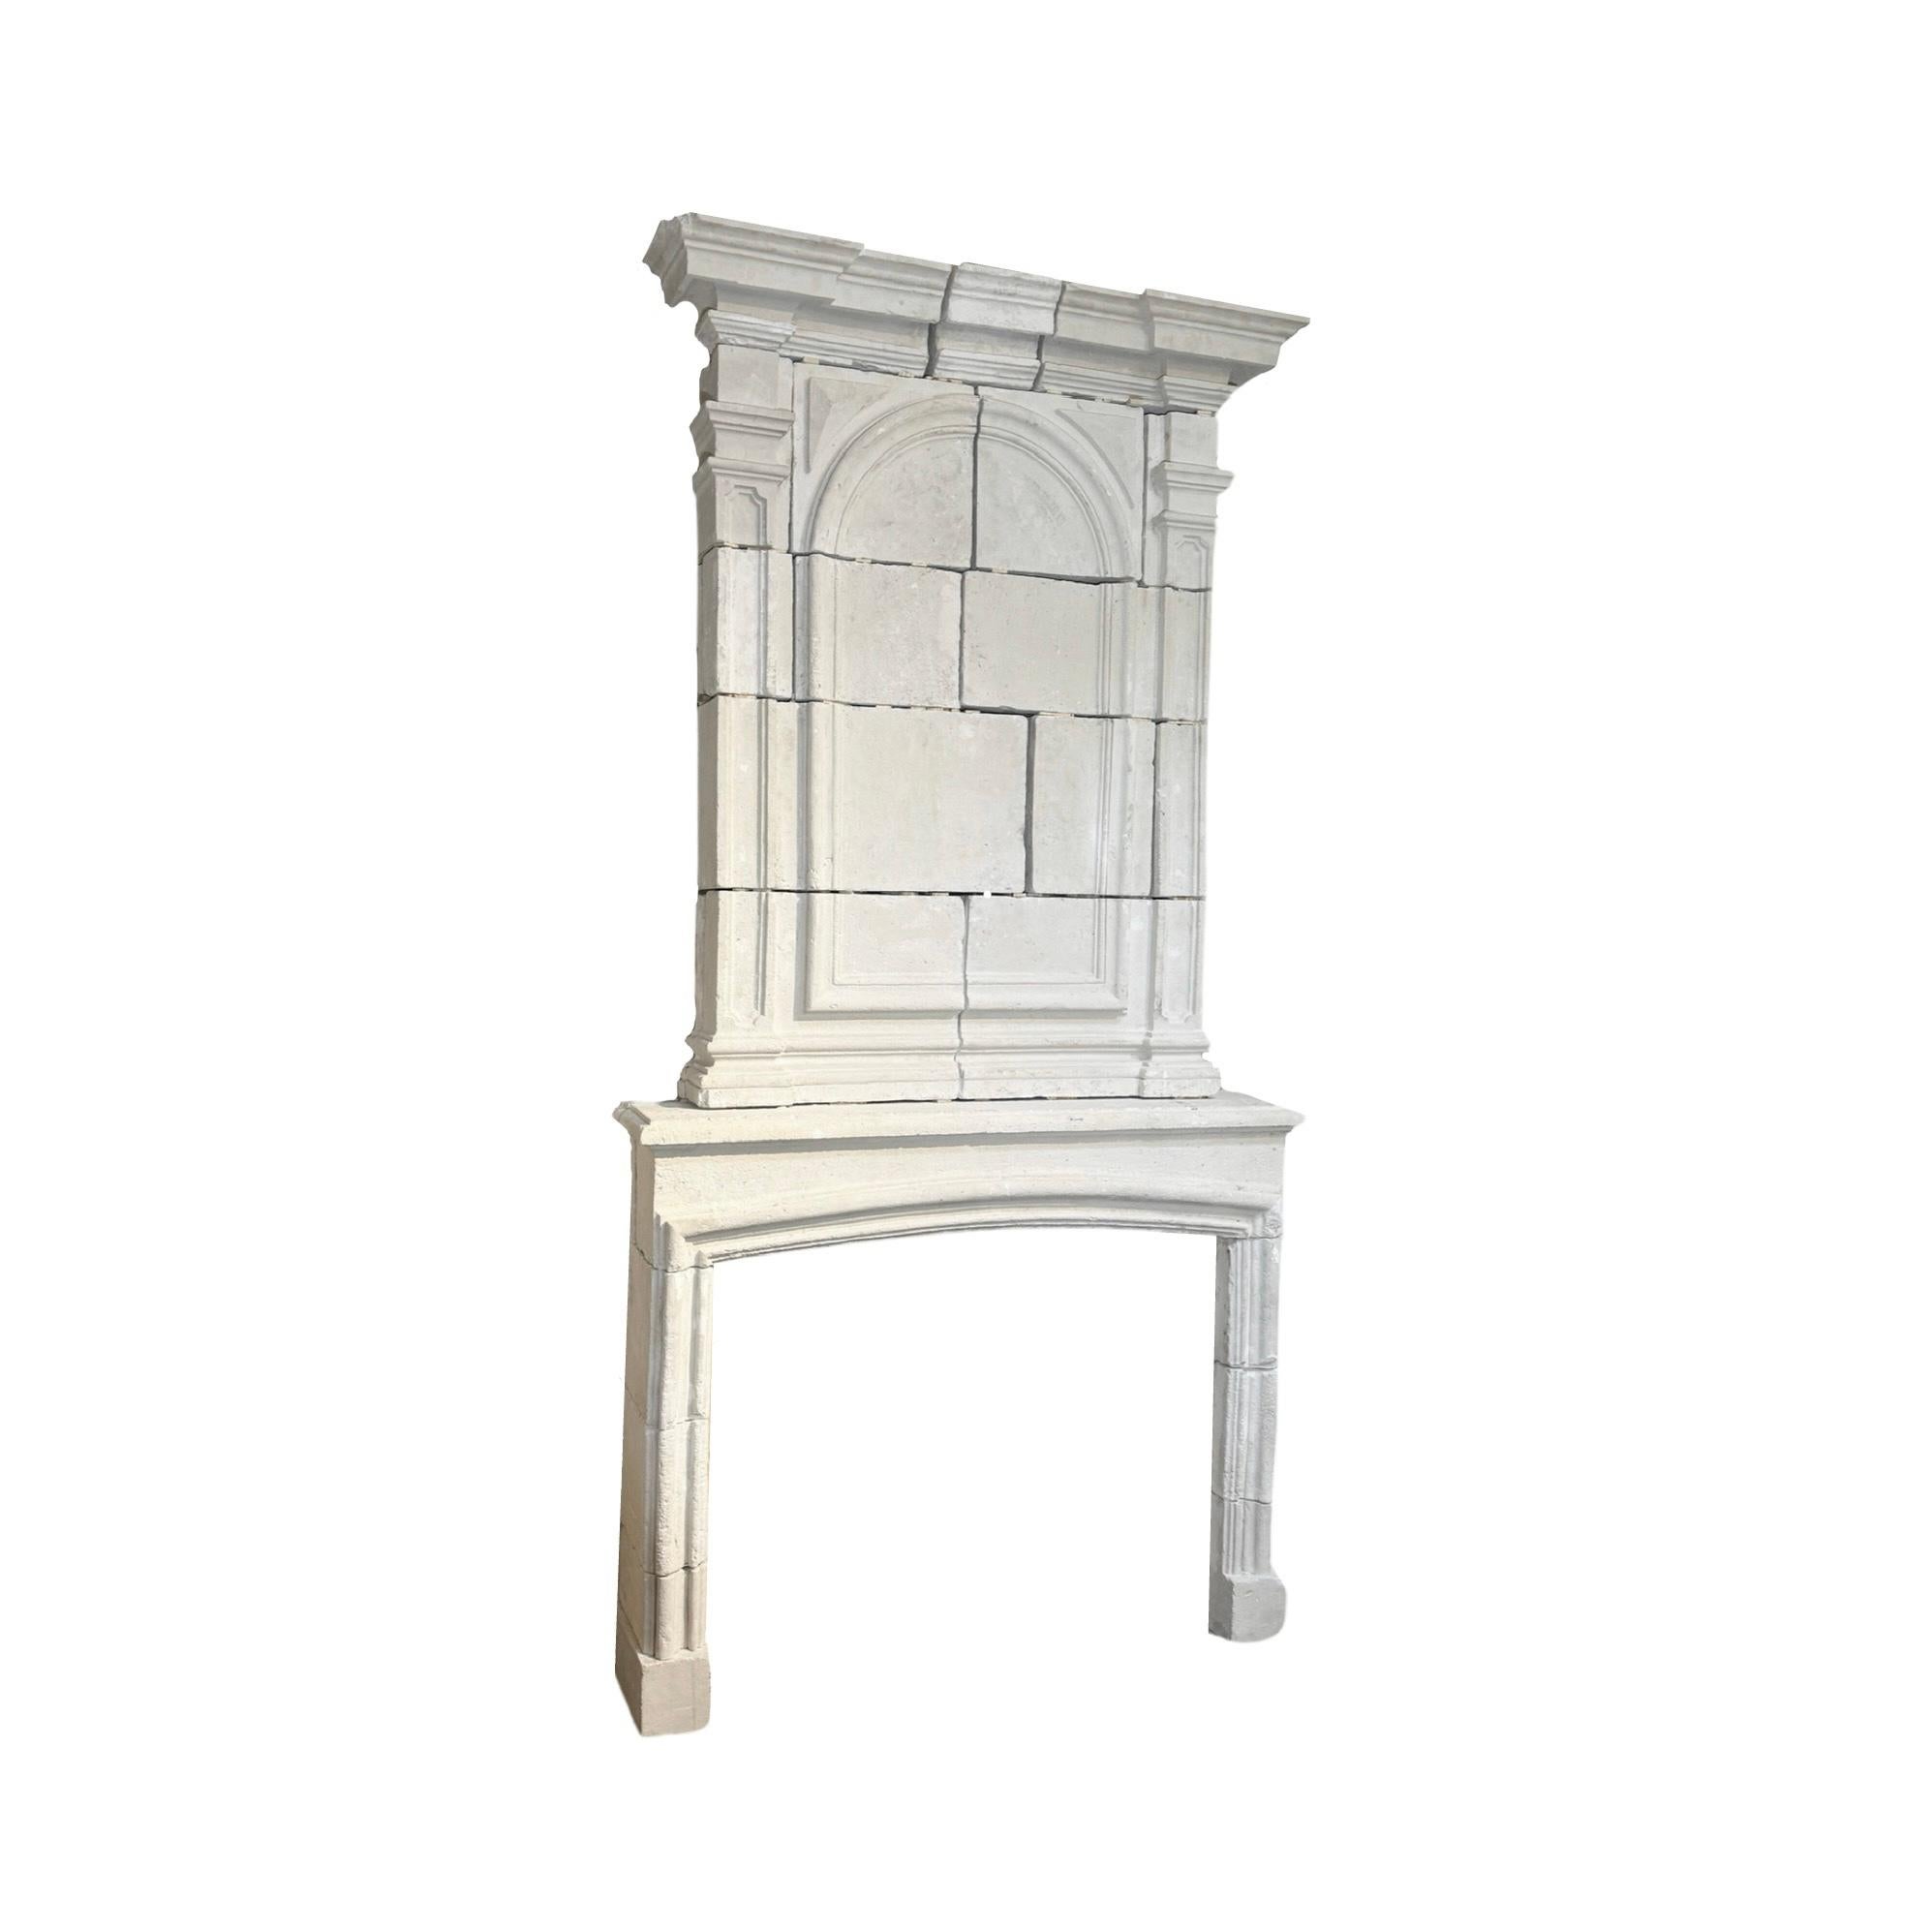 Cette cheminée en pierre calcaire française des années 1850 apporte une touche d'histoire et d'élégance à toute maison. Fabriquée dans un style Louis XIII, la cheminée antique ajoute une touche unique à votre foyer tout en apportant la durabilité et